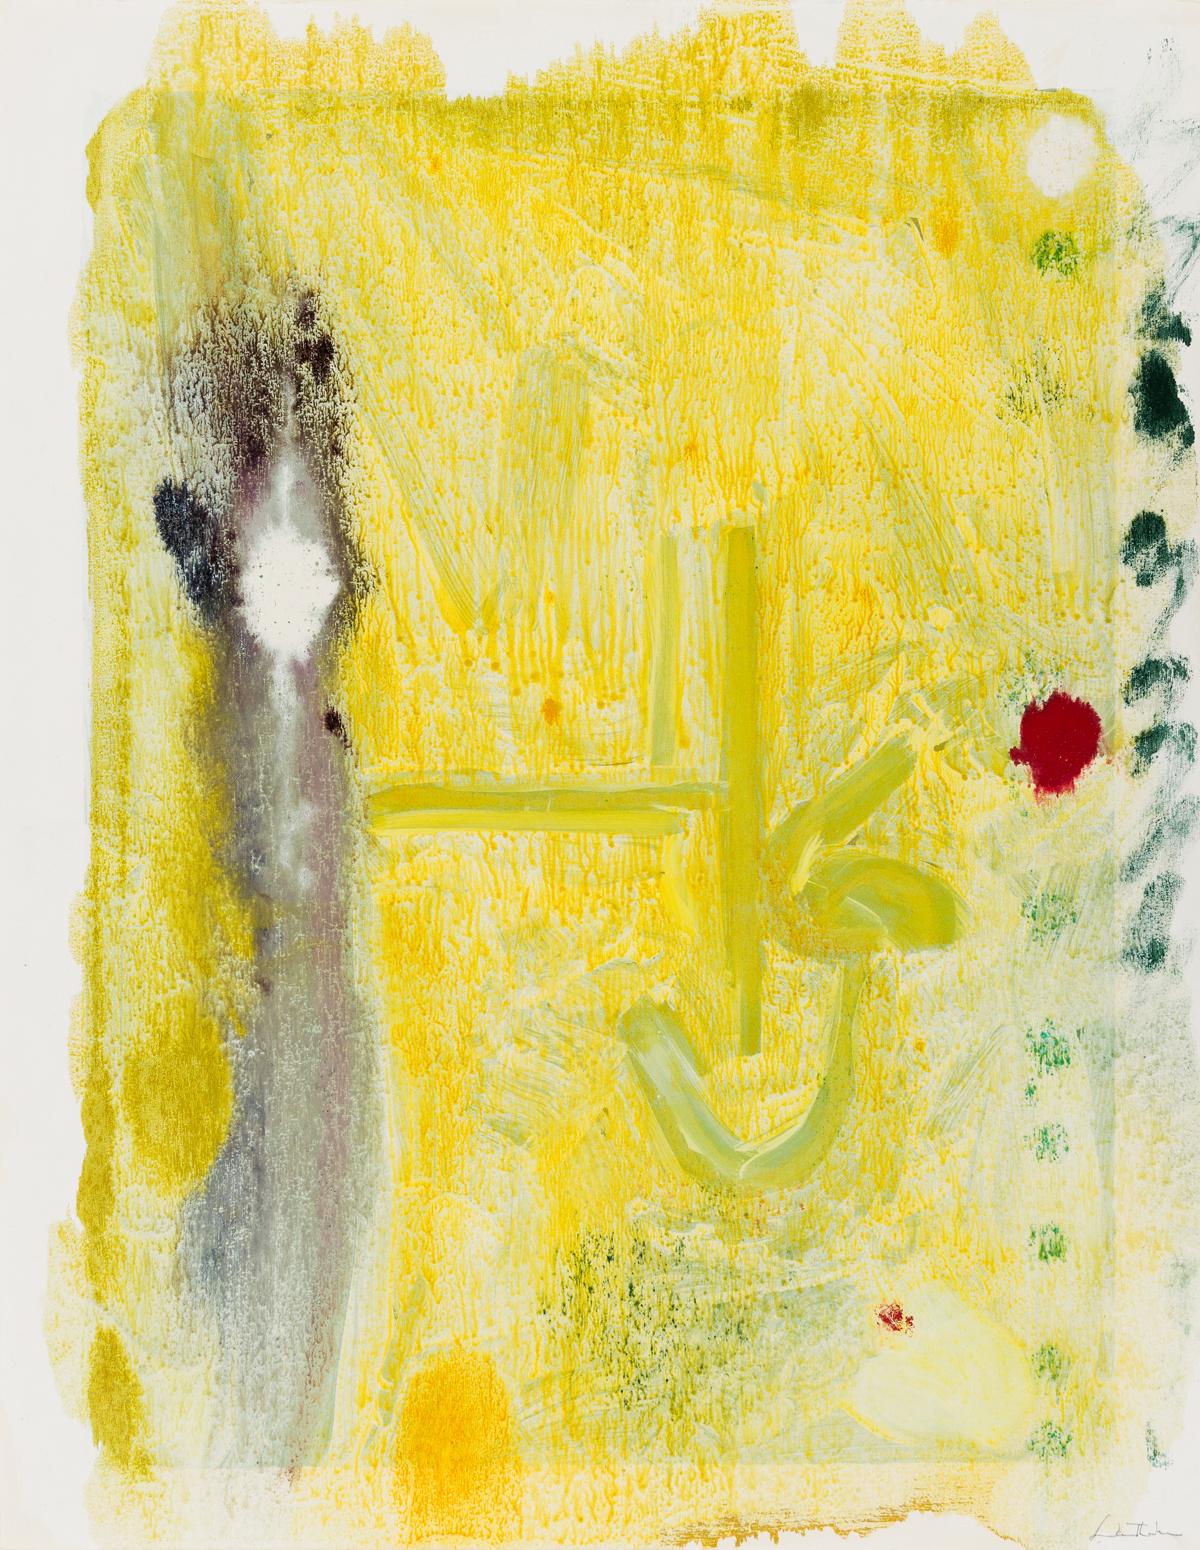 Helen Frankenthaler Abstract Print - Spring Run XVI